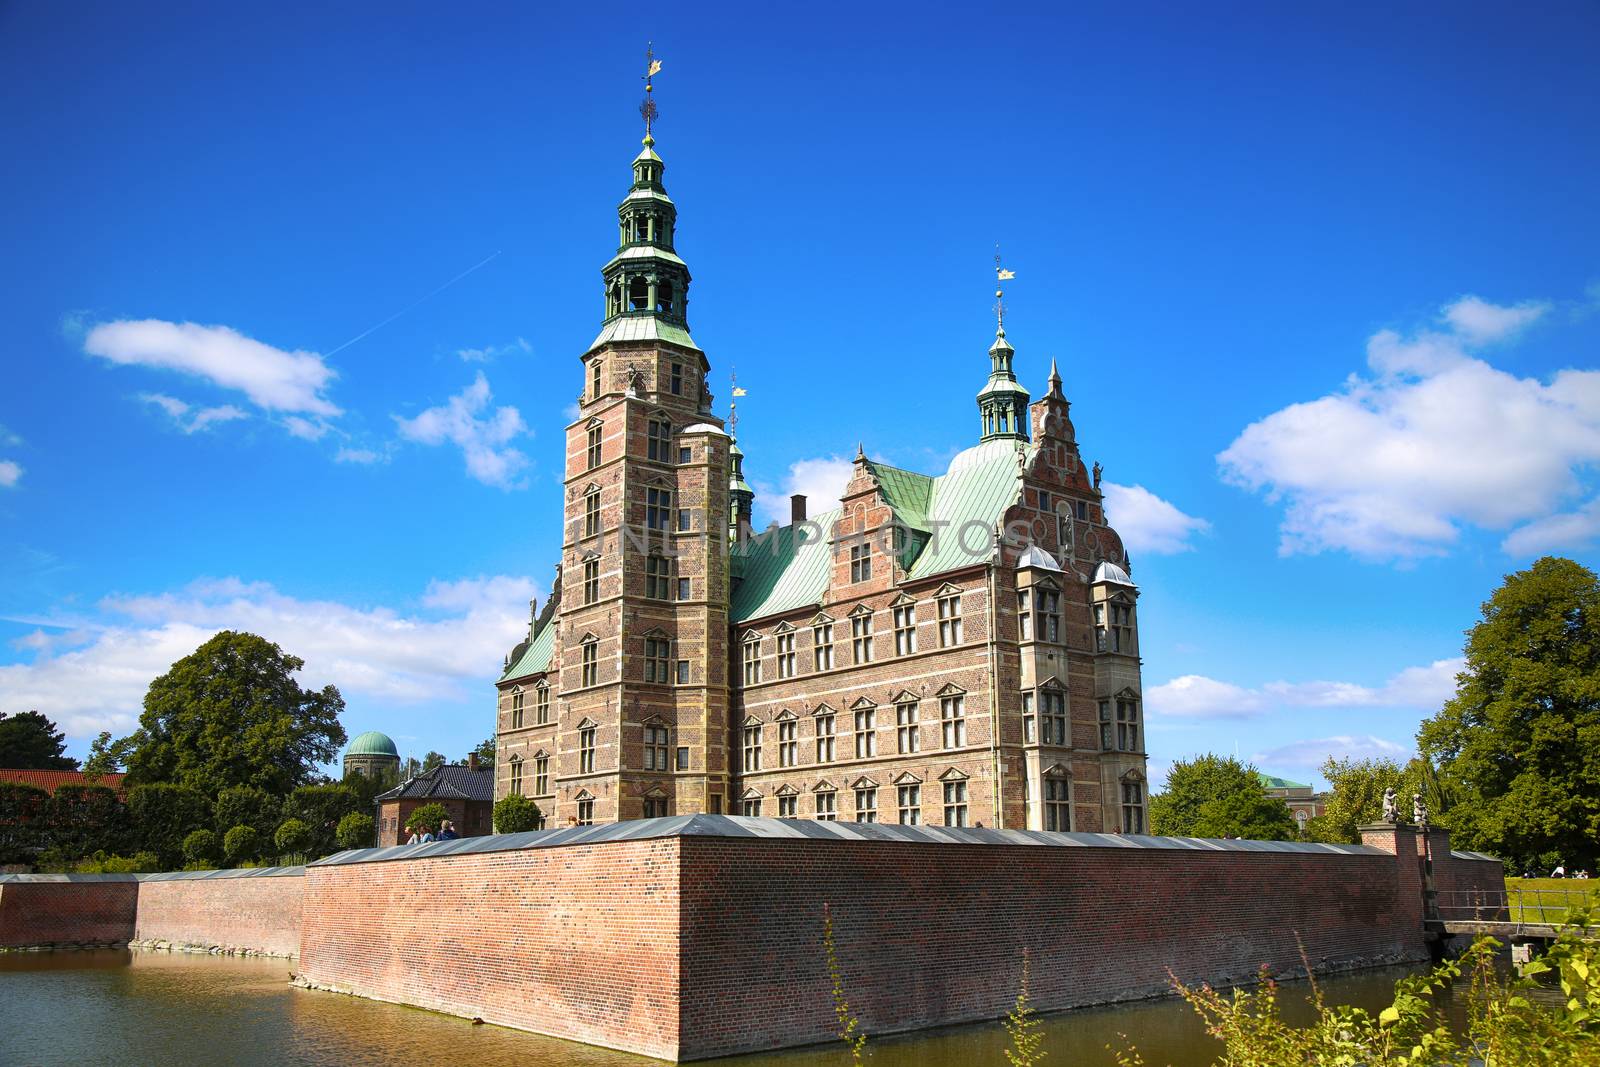 Copenhagen, Denmark – August 15, 2016: Rosenborg Castle is a renaissance castle located in Copenhagen, build by King Christian IV in Copenhagen, Denmark on August 15, 2016.